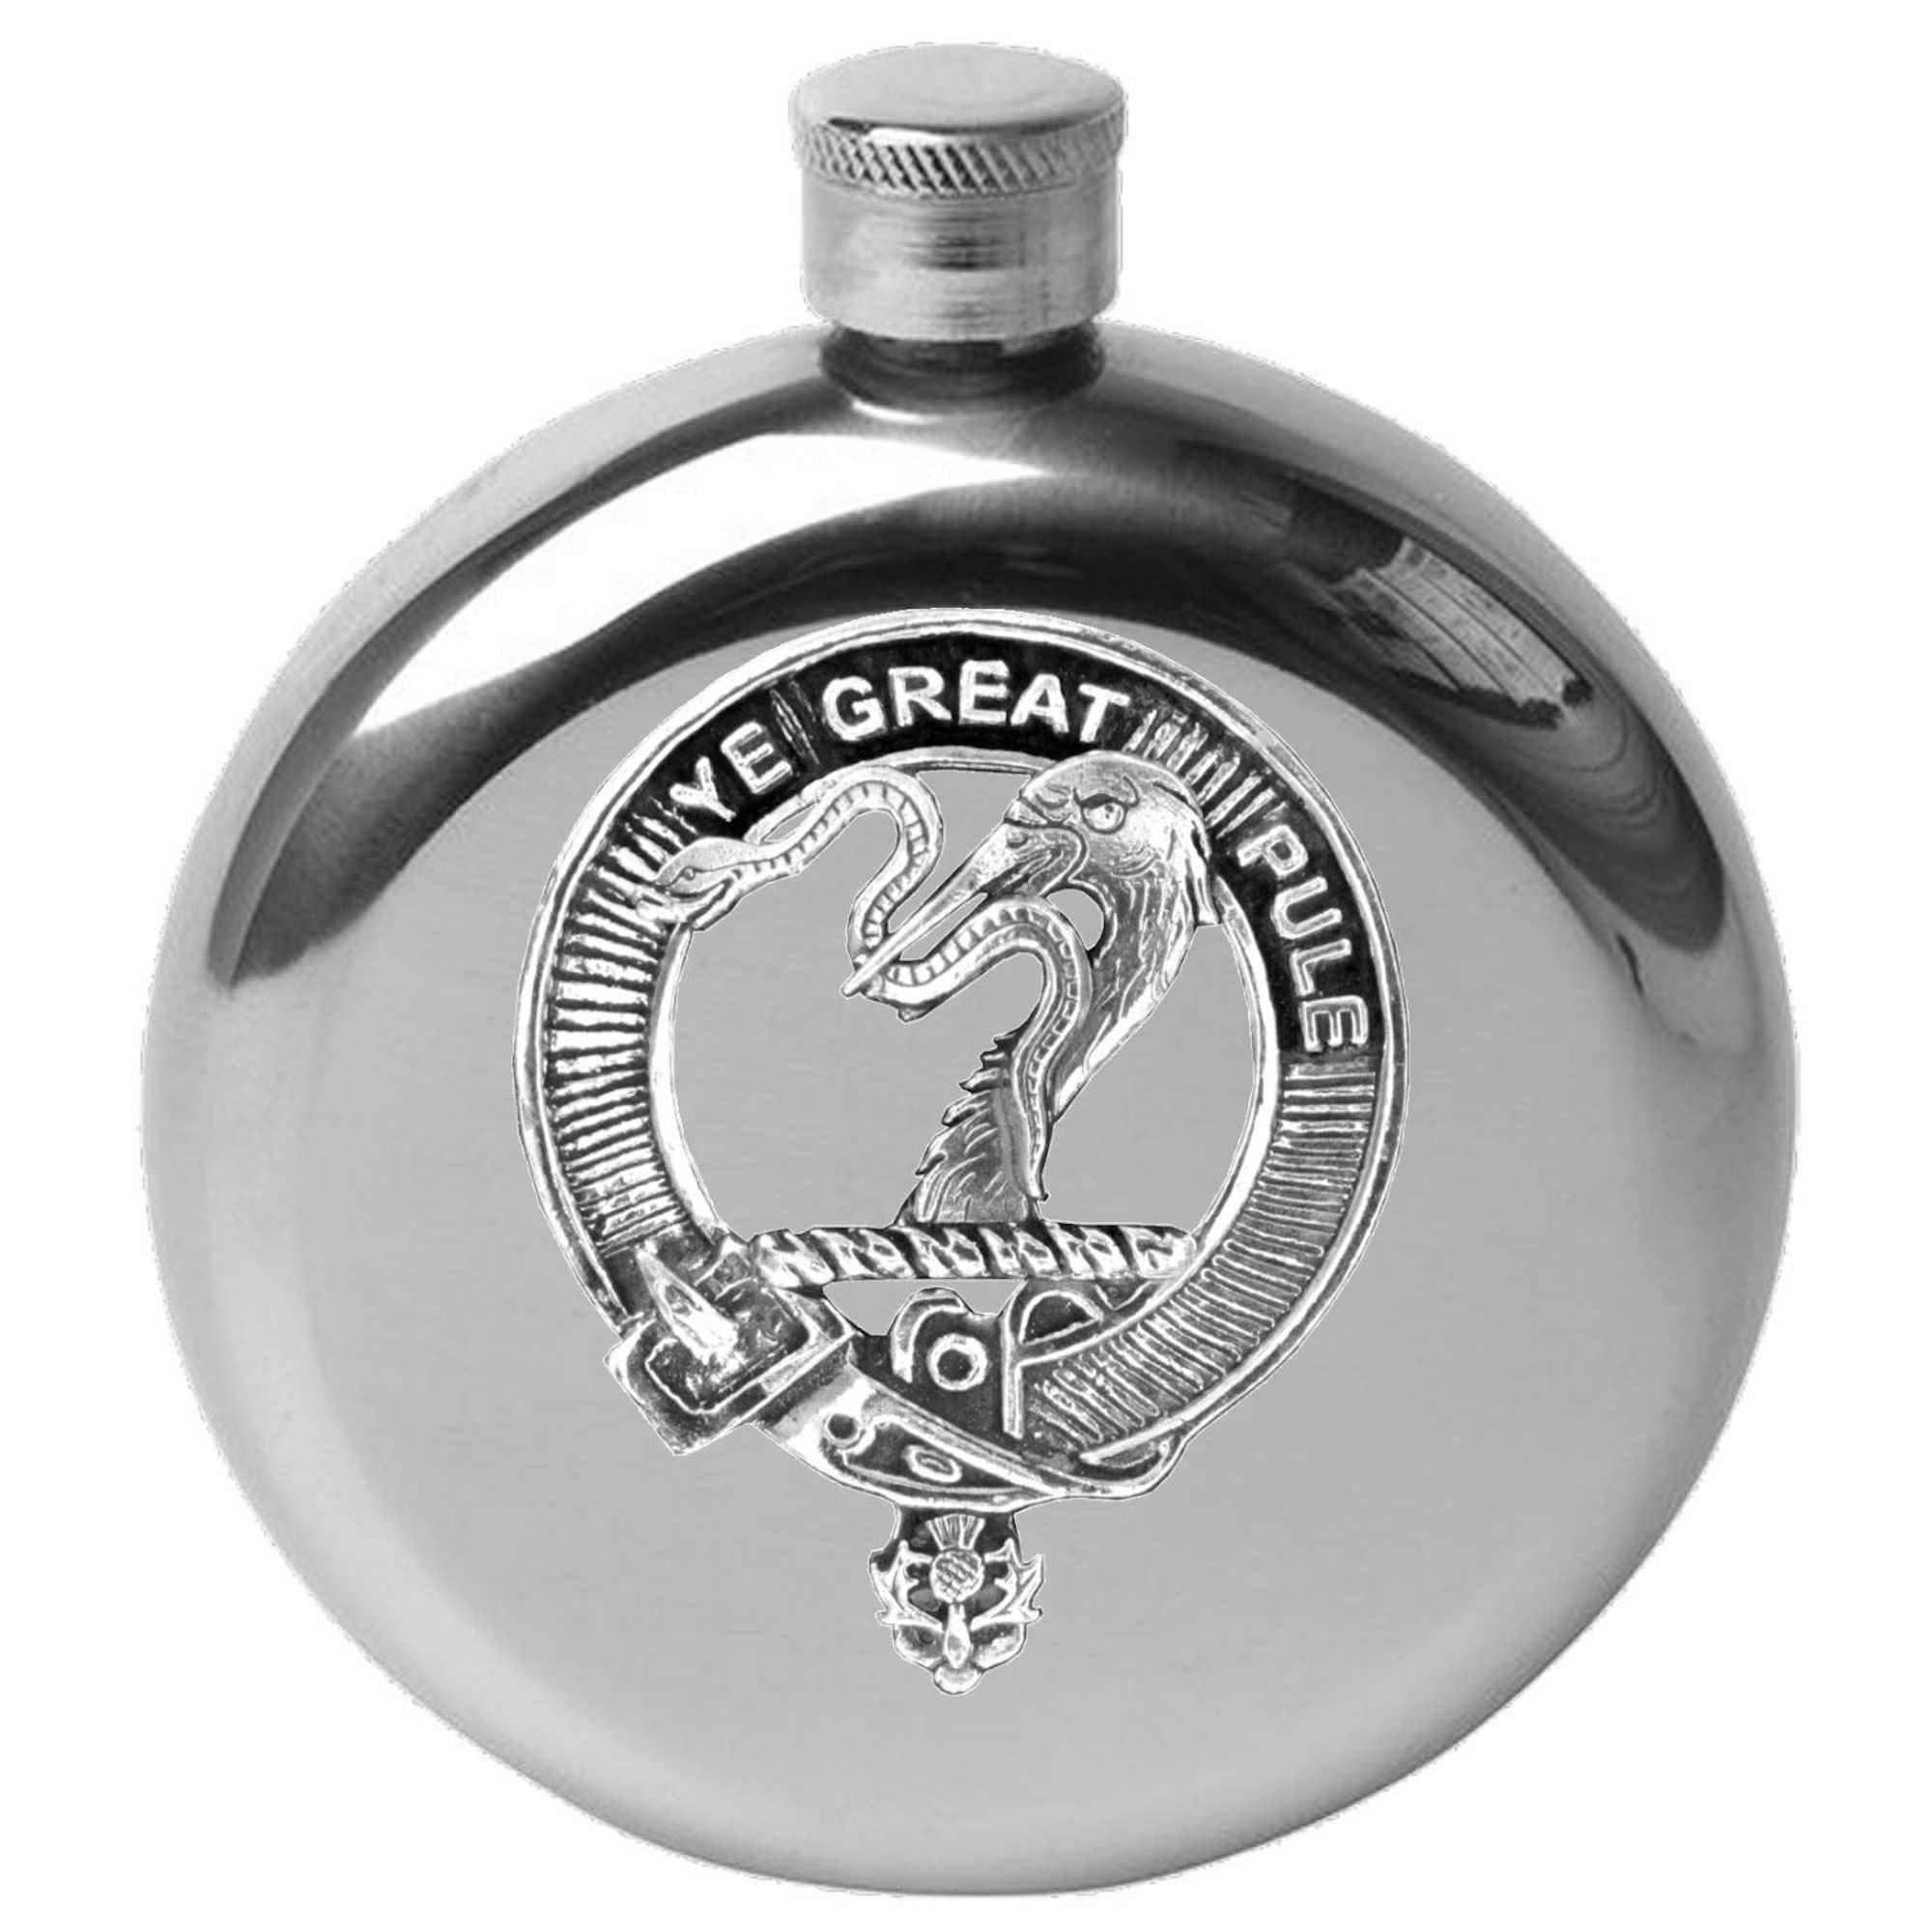 Mercer 5 oz Round Clan Crest Scottish Badge Flask